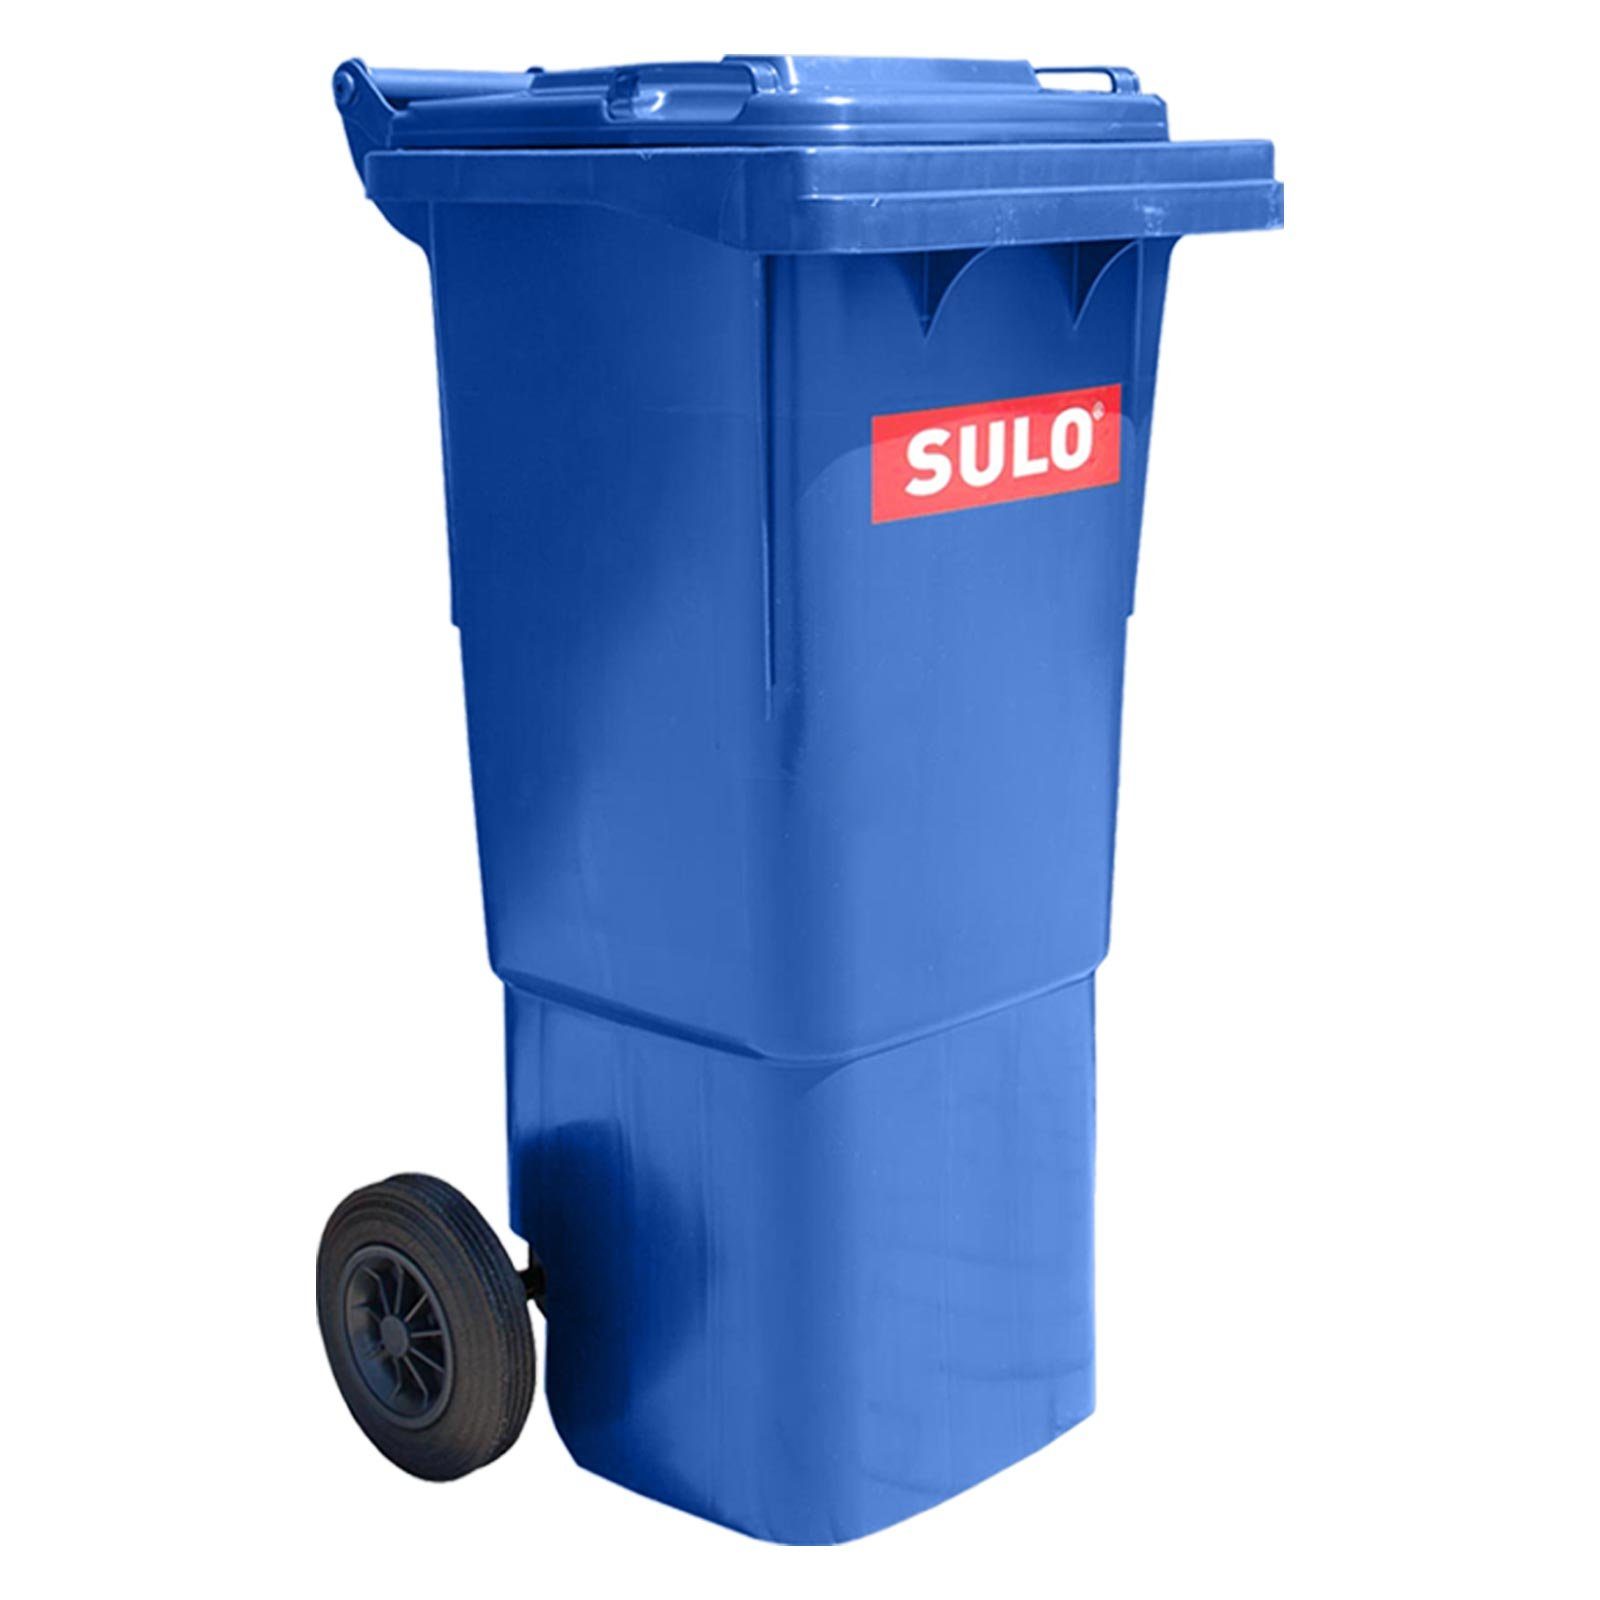 wird auftauchen! SULO Mülltrennsystem Müllgrossbehälter 60L blau Fahrbar